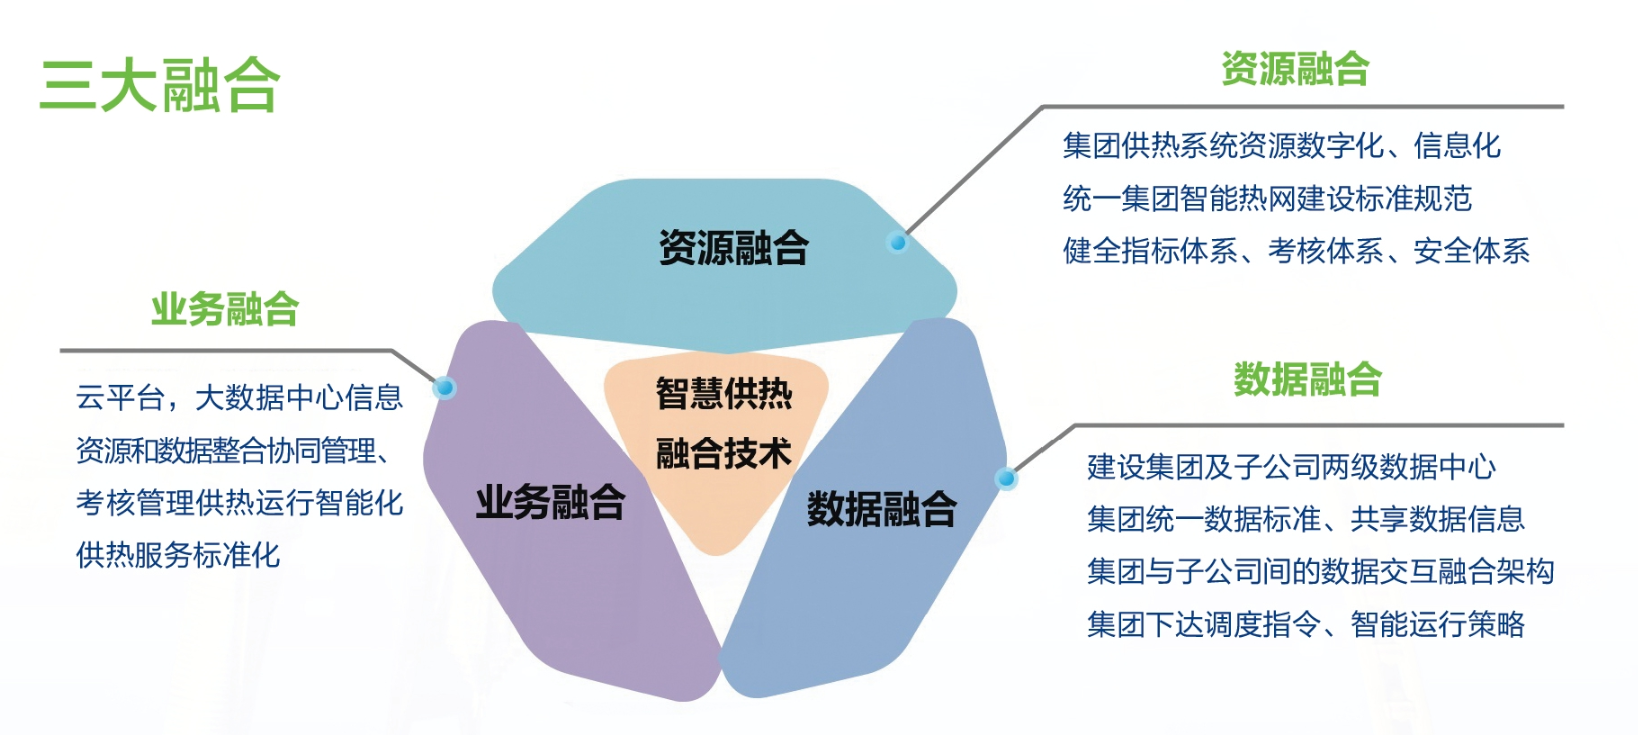 企业集团级“智慧供热”信息化平台(图1)